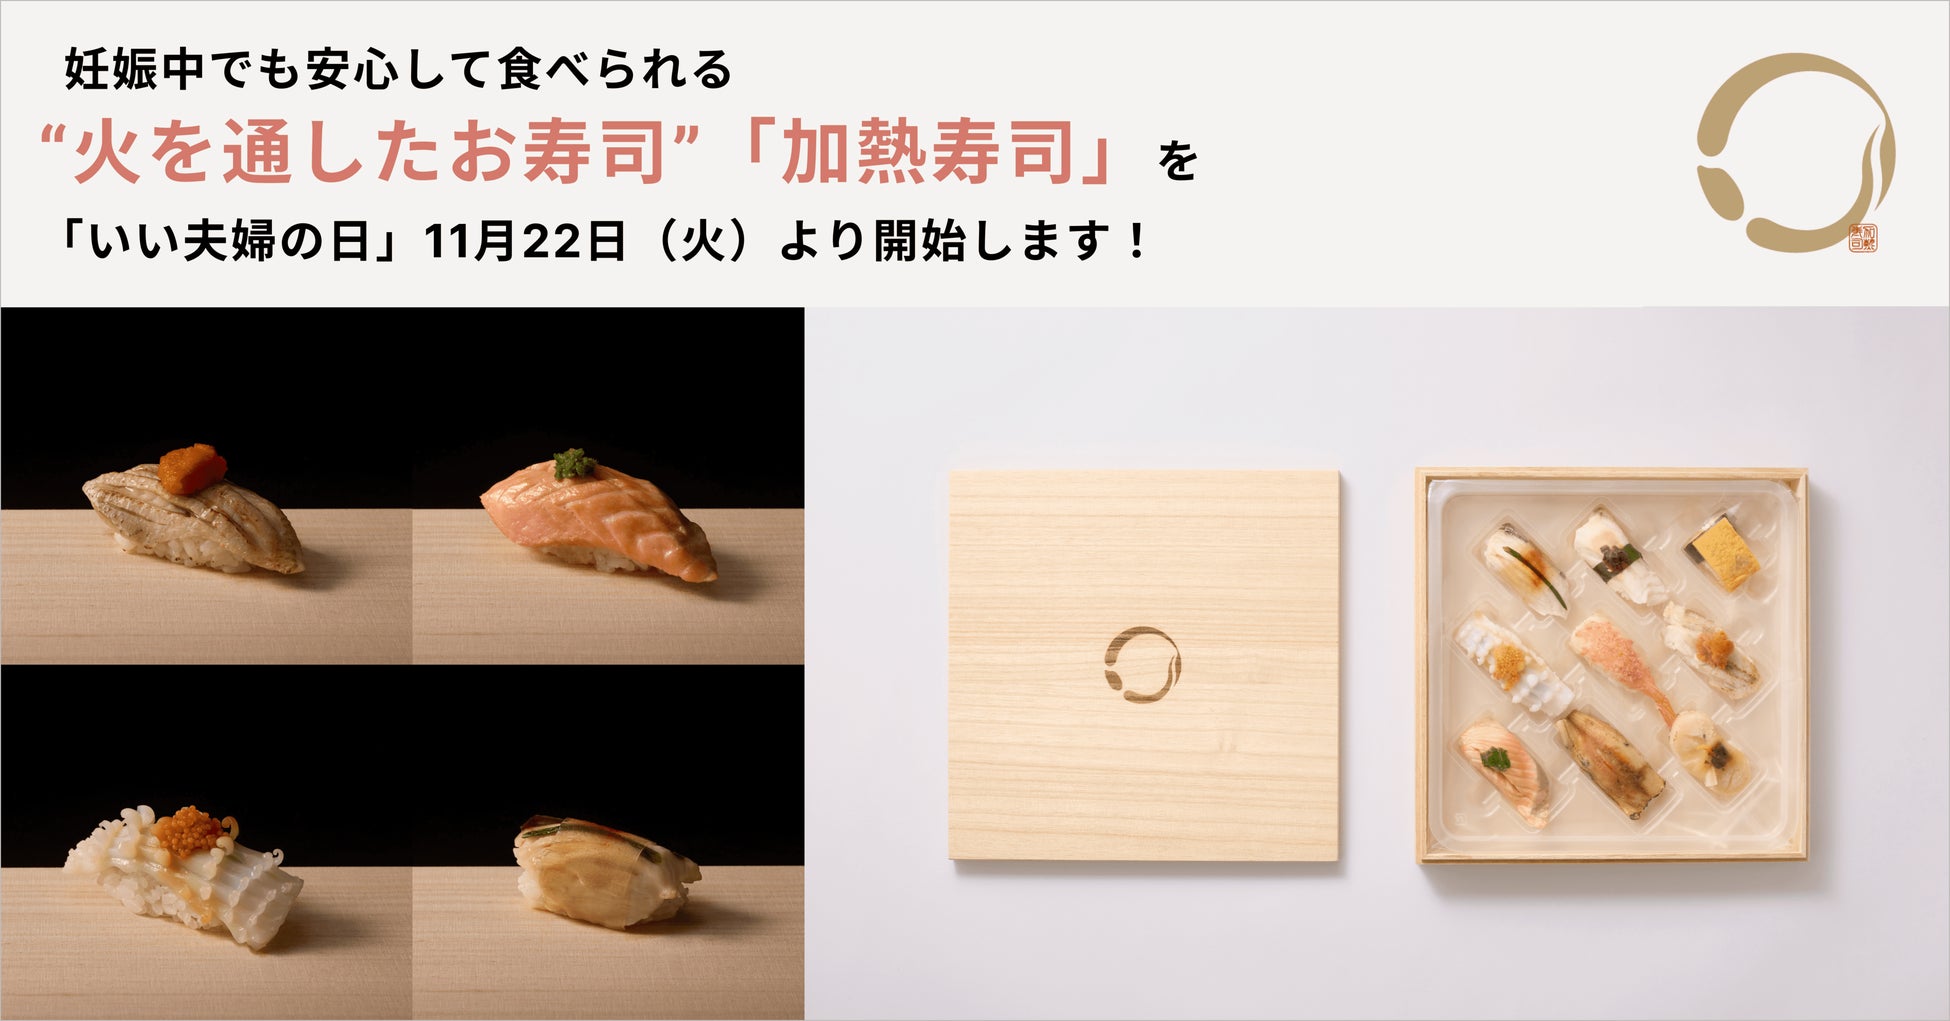 妊娠中でも安心して食べられる“火を通したお寿司”「加熱寿司」の販売を11月22日（火）より開始します！